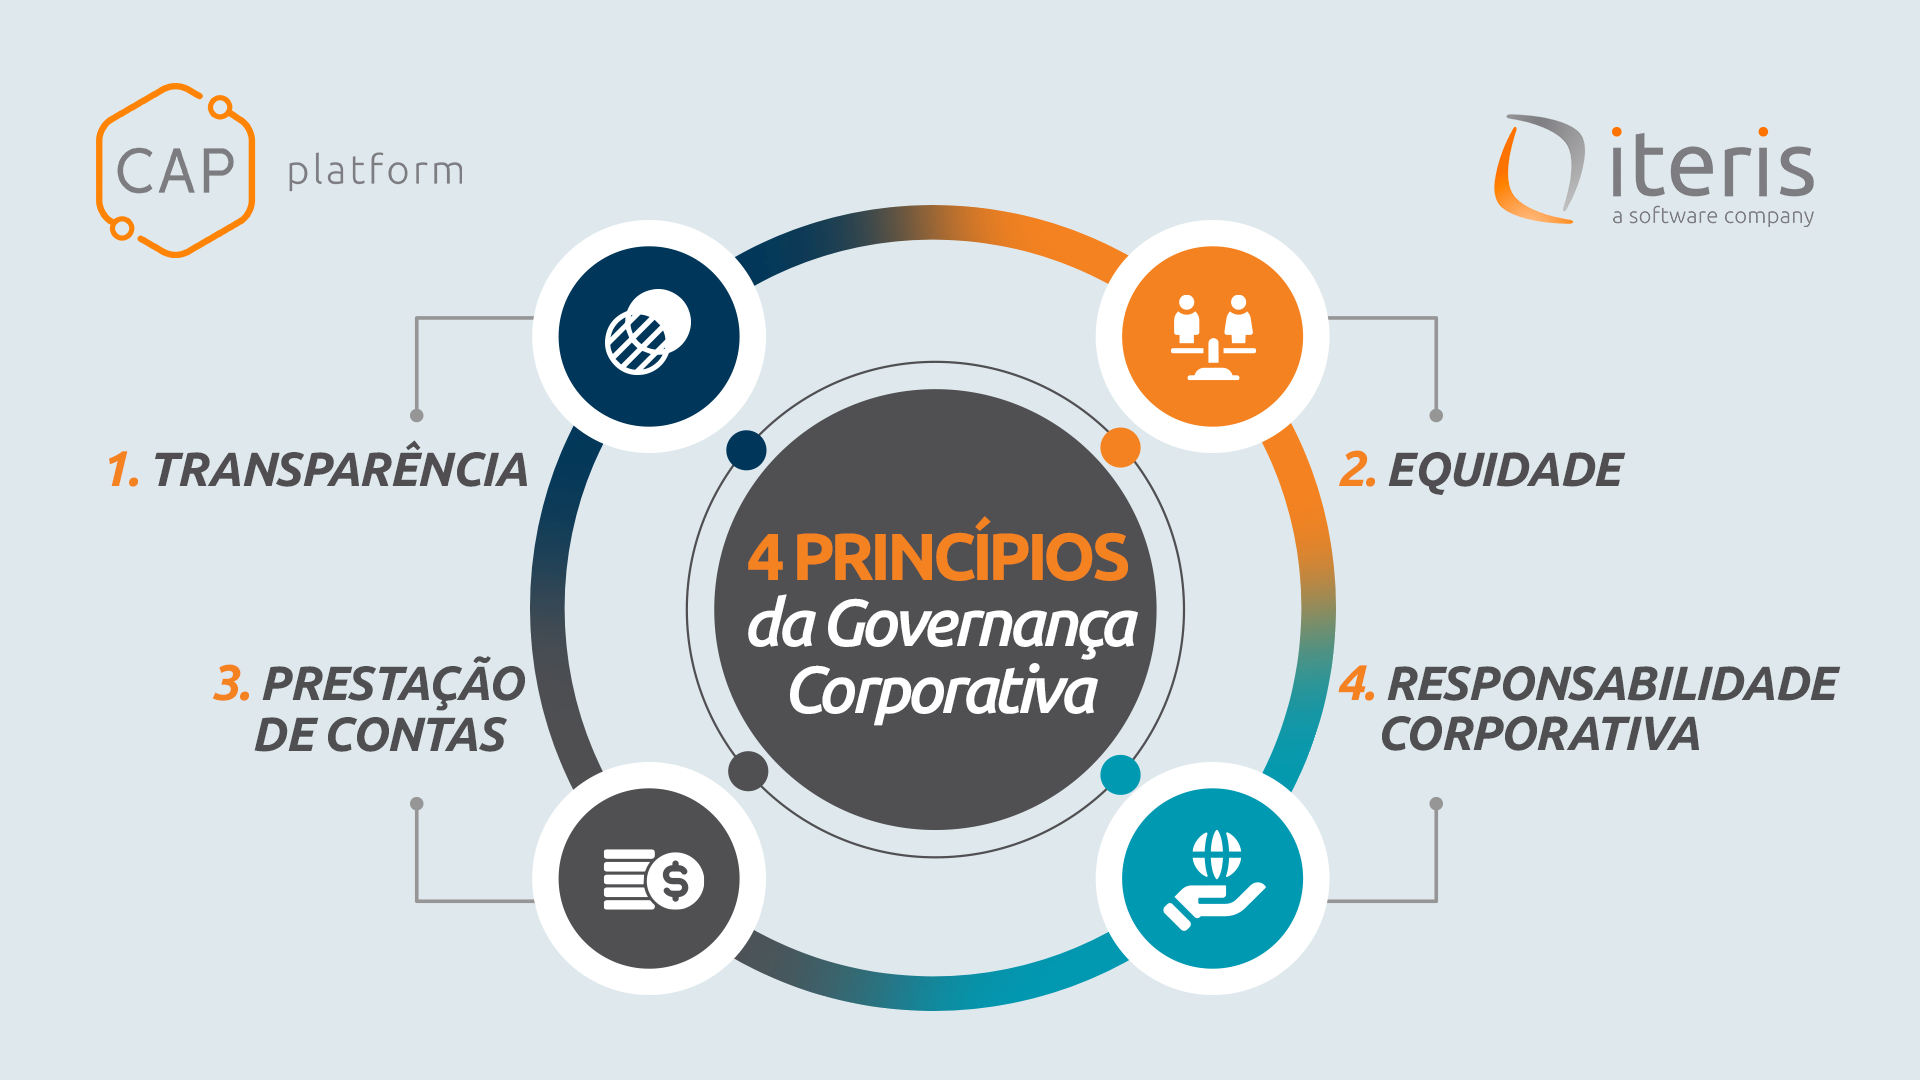 Imagem que demonstra os quatro princípios da Governança Corporativa, sendo: 1. Transparência; 2. Equidade; 3. Prestação de Contas; 4. Responsabilidade Corporativa